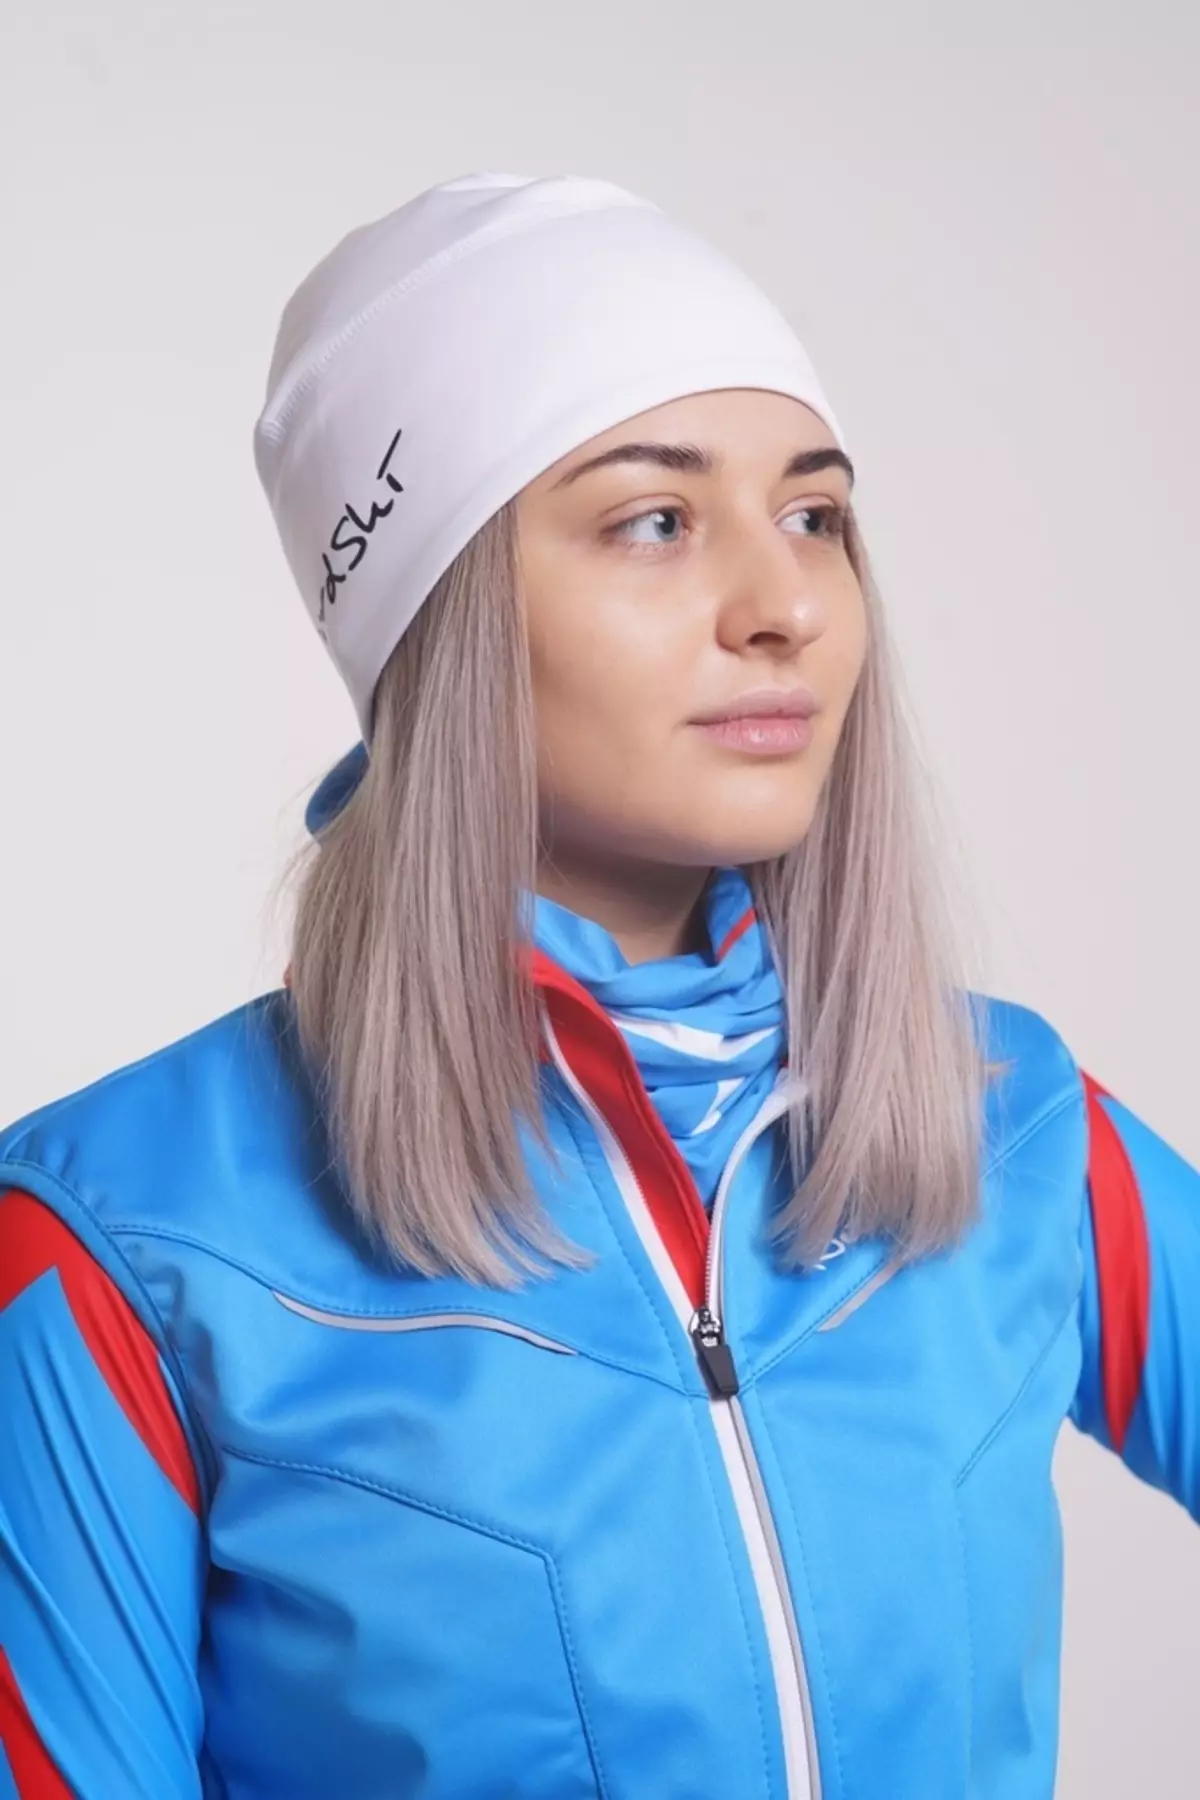 Ski kape: skijanje kape i skije cross-country, ženske i ostali sportski modeli. Kako odabrati šešir za skijaše? 20204_6